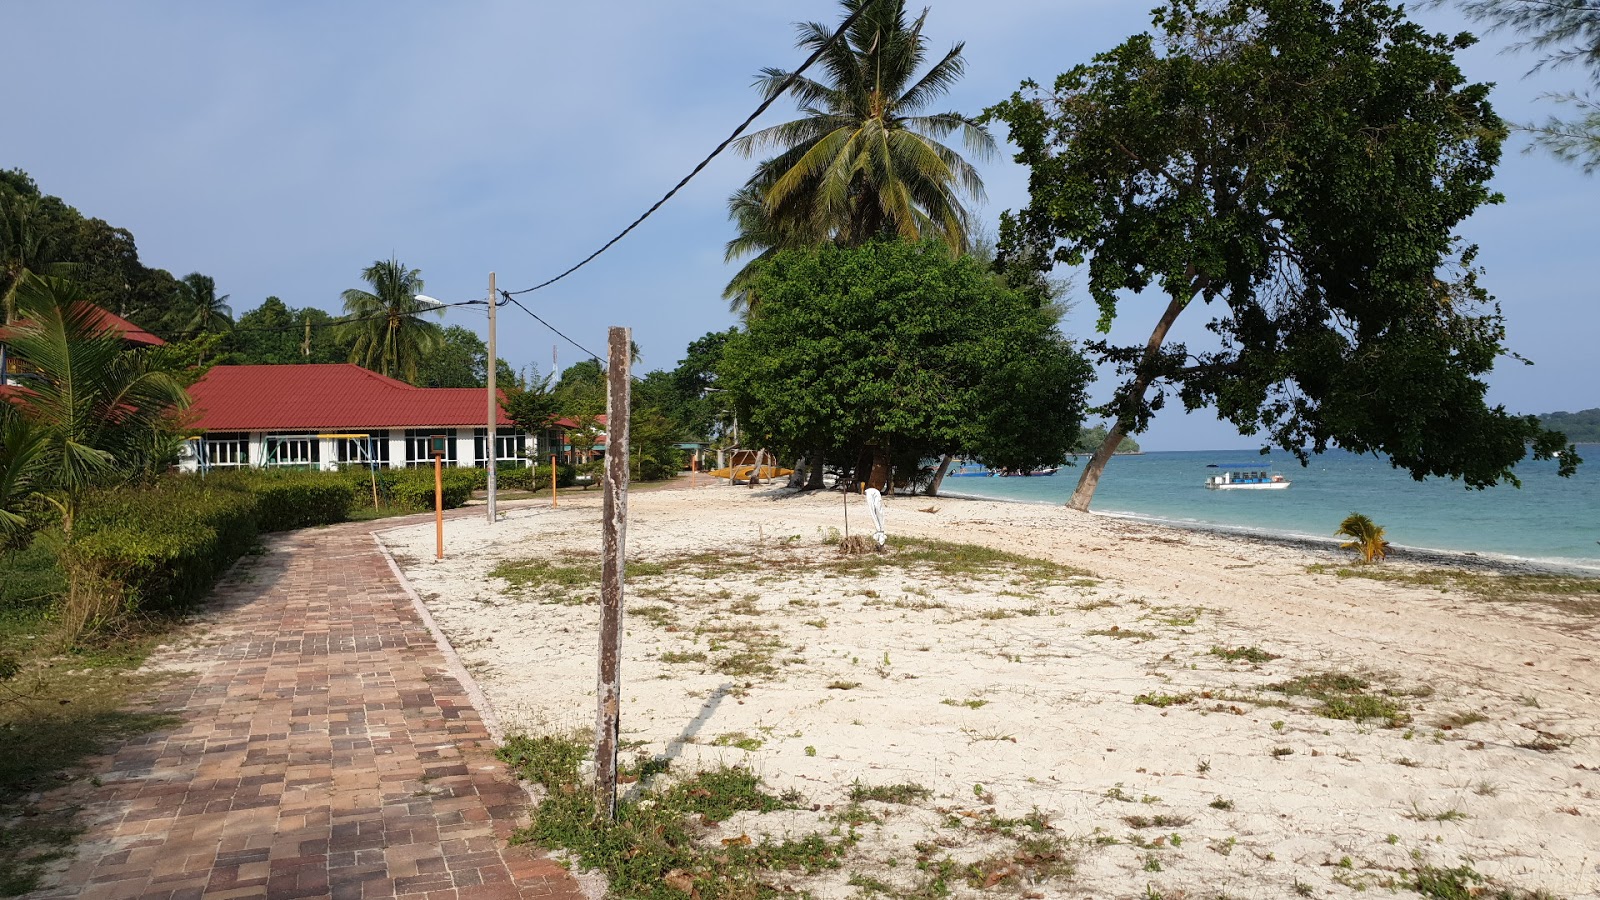 Fotografie cu Shaz Resort beach amplasat într-o zonă naturală